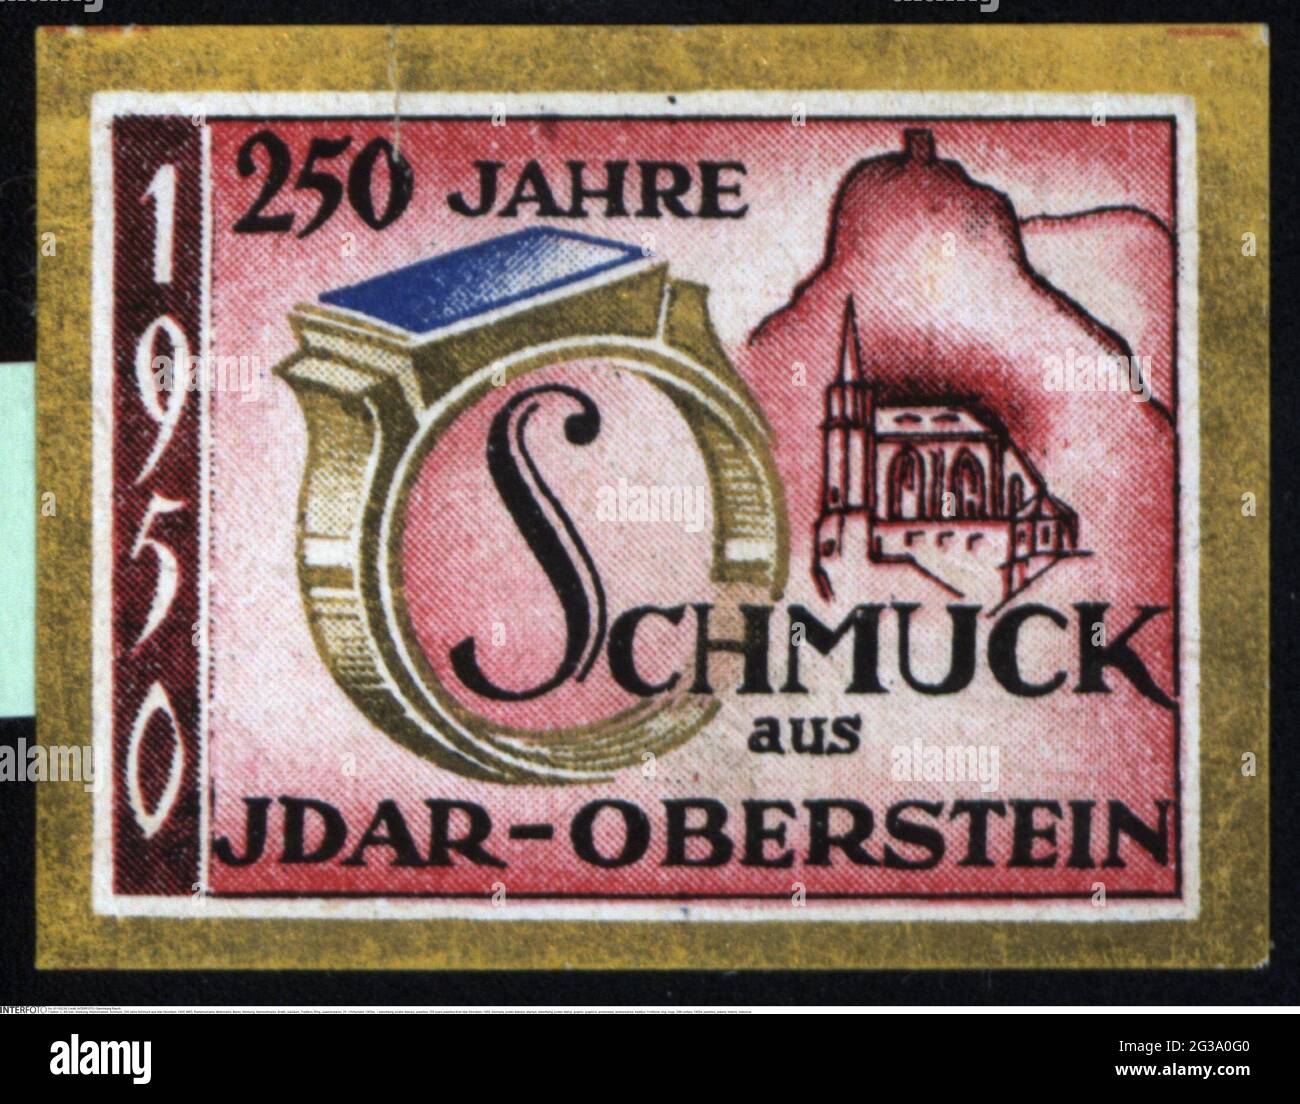 Werbung, Plakatmarken, Schmuck, 250 Jahre Schmuck aus Idar-Oberstein, 1950, ZUSÄTZLICHE-RIGHTS-CLEARANCE-INFO-NOT-AVAILABLE Stockfoto